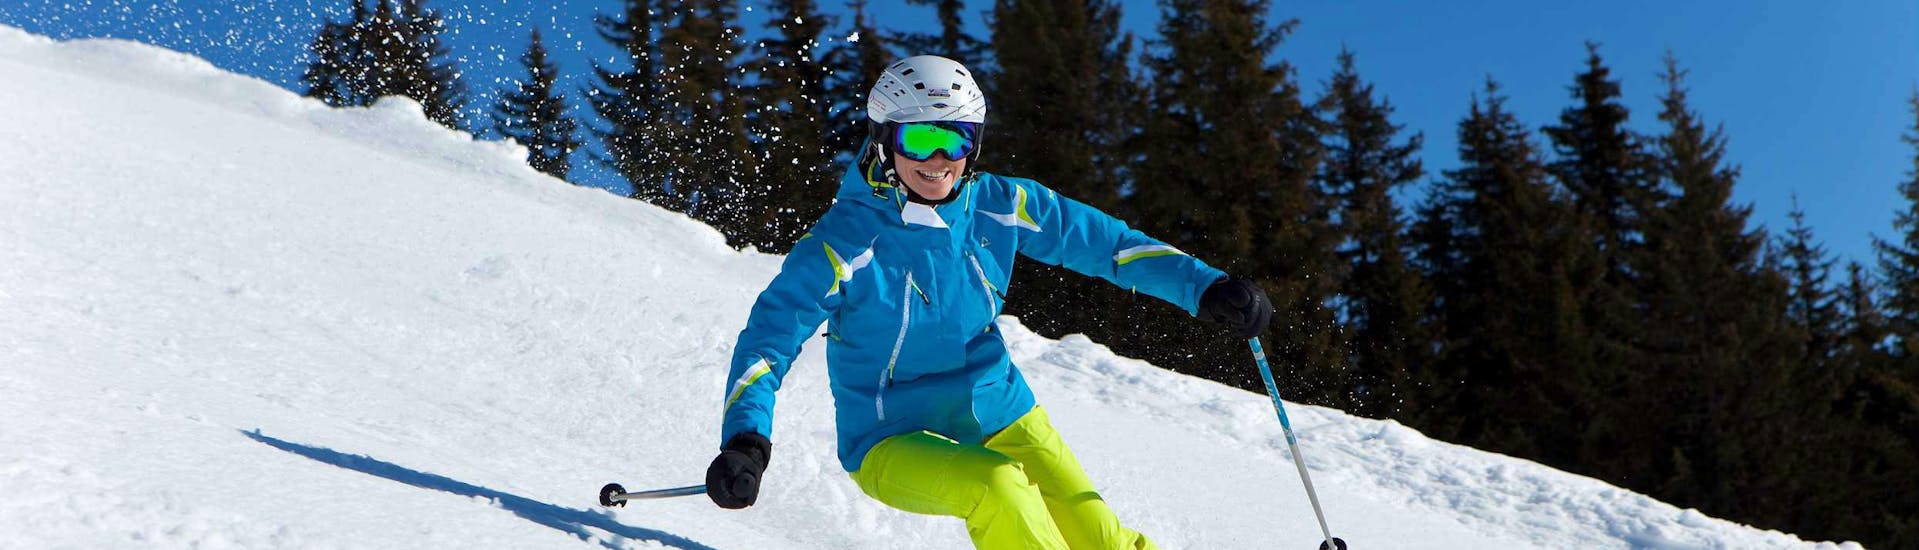 Clases de esquí para adultos a partir de 15 años para avanzados con Skischule Ski Dome Viehhofen.